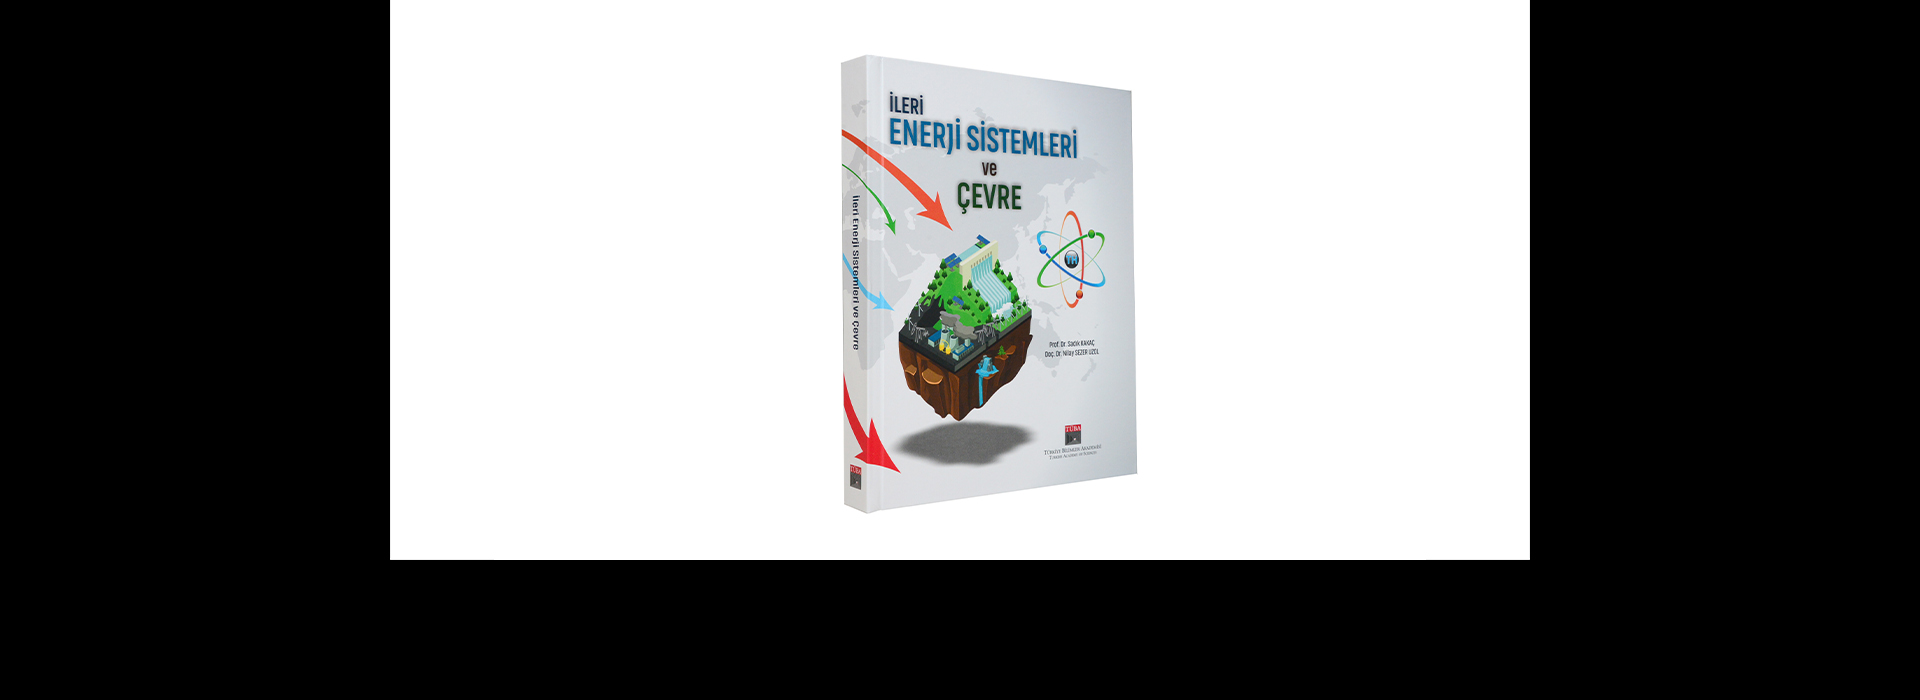 TÜBA Ders Kitapları Serisinde ‘İleri Enerji Sistemler ve Çevre’